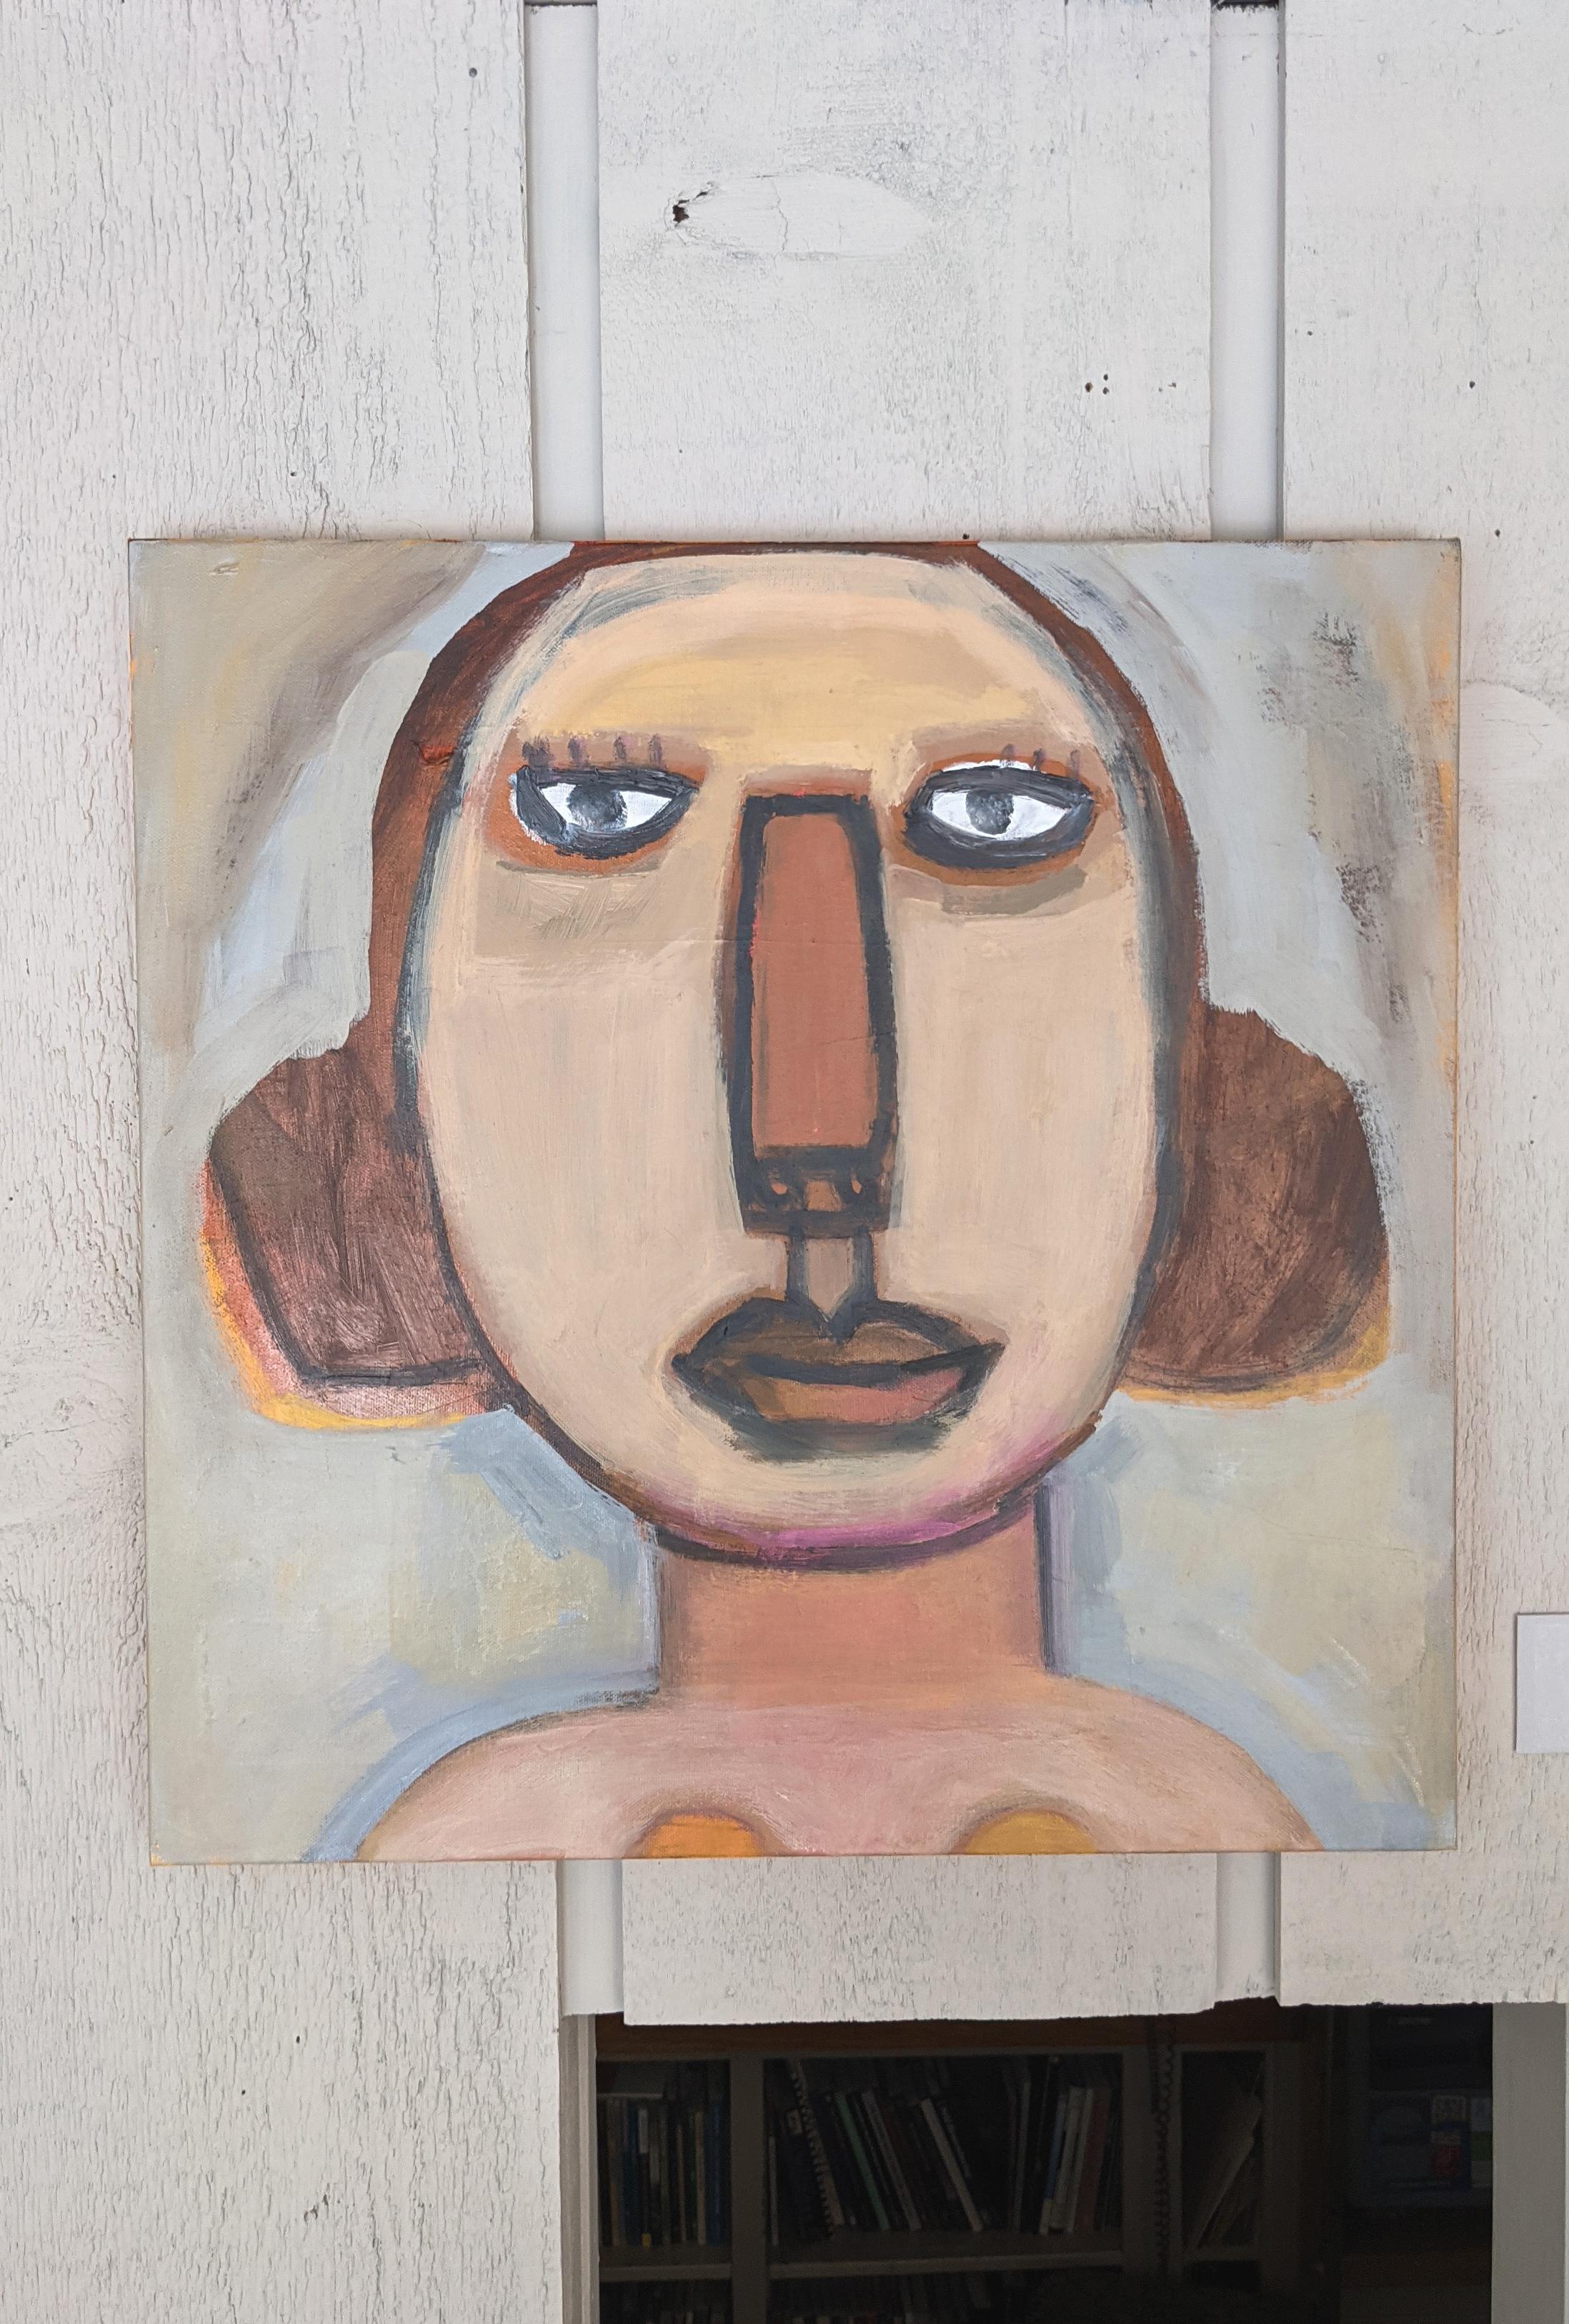 Femme abstraite I, acrylique sur toile, 20 x 20 pouces (côtés peints en orange), $750

L'œuvre de Randee Levine suit le mouvement expressionniste abstrait, permettant à la pose d'un trait de peinture d'informer le suivant. Par ce processus de